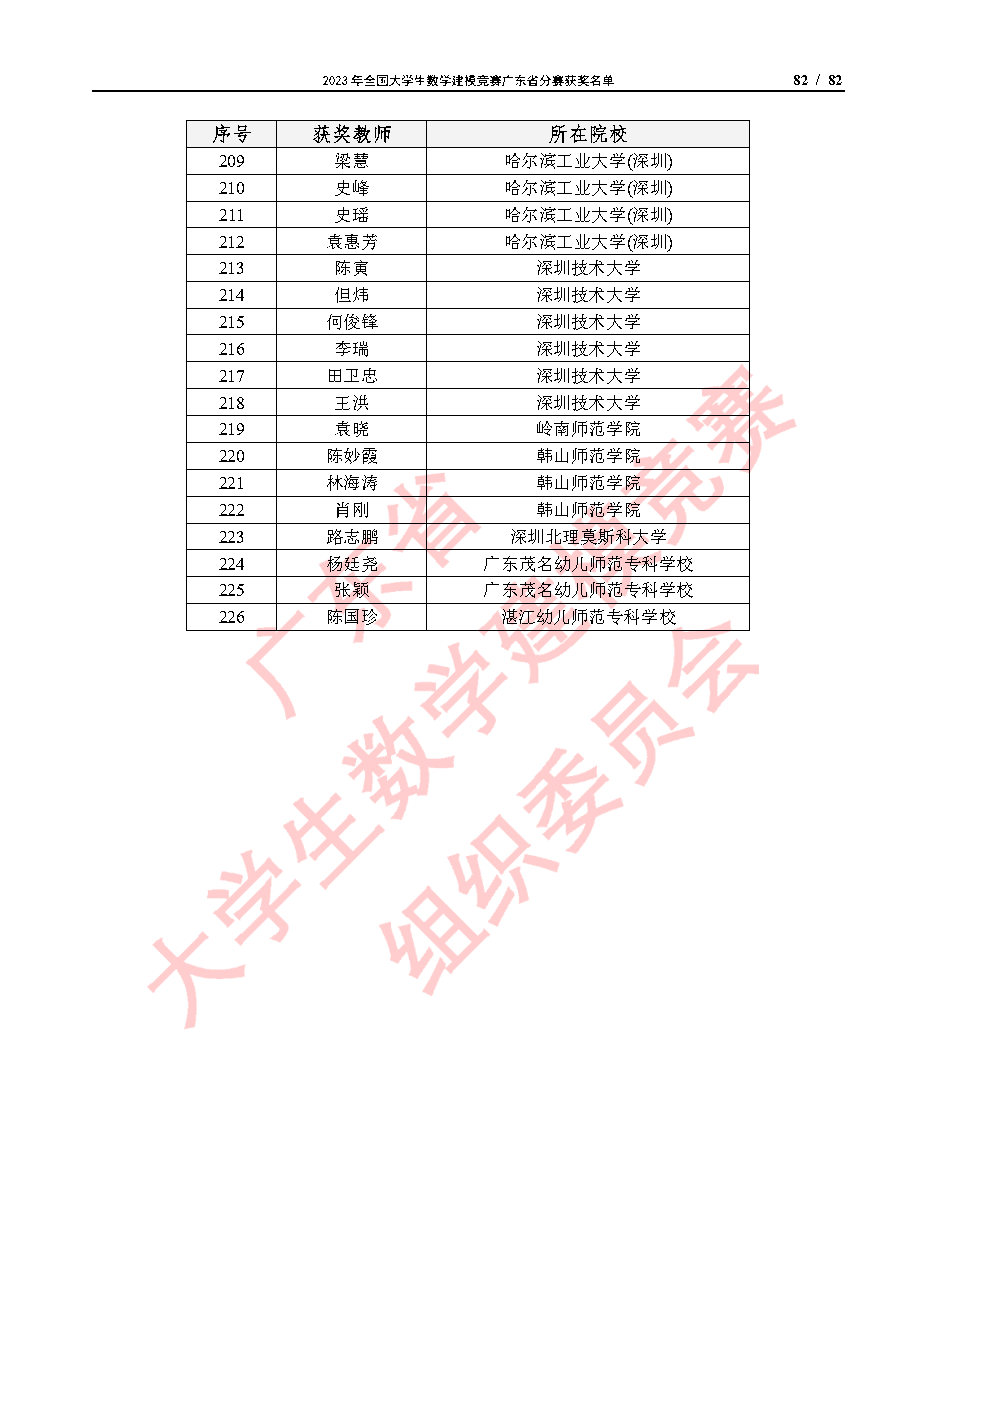 2023年全国大学生数学建模竞赛广东省分赛获奖名单_Page82.jpg